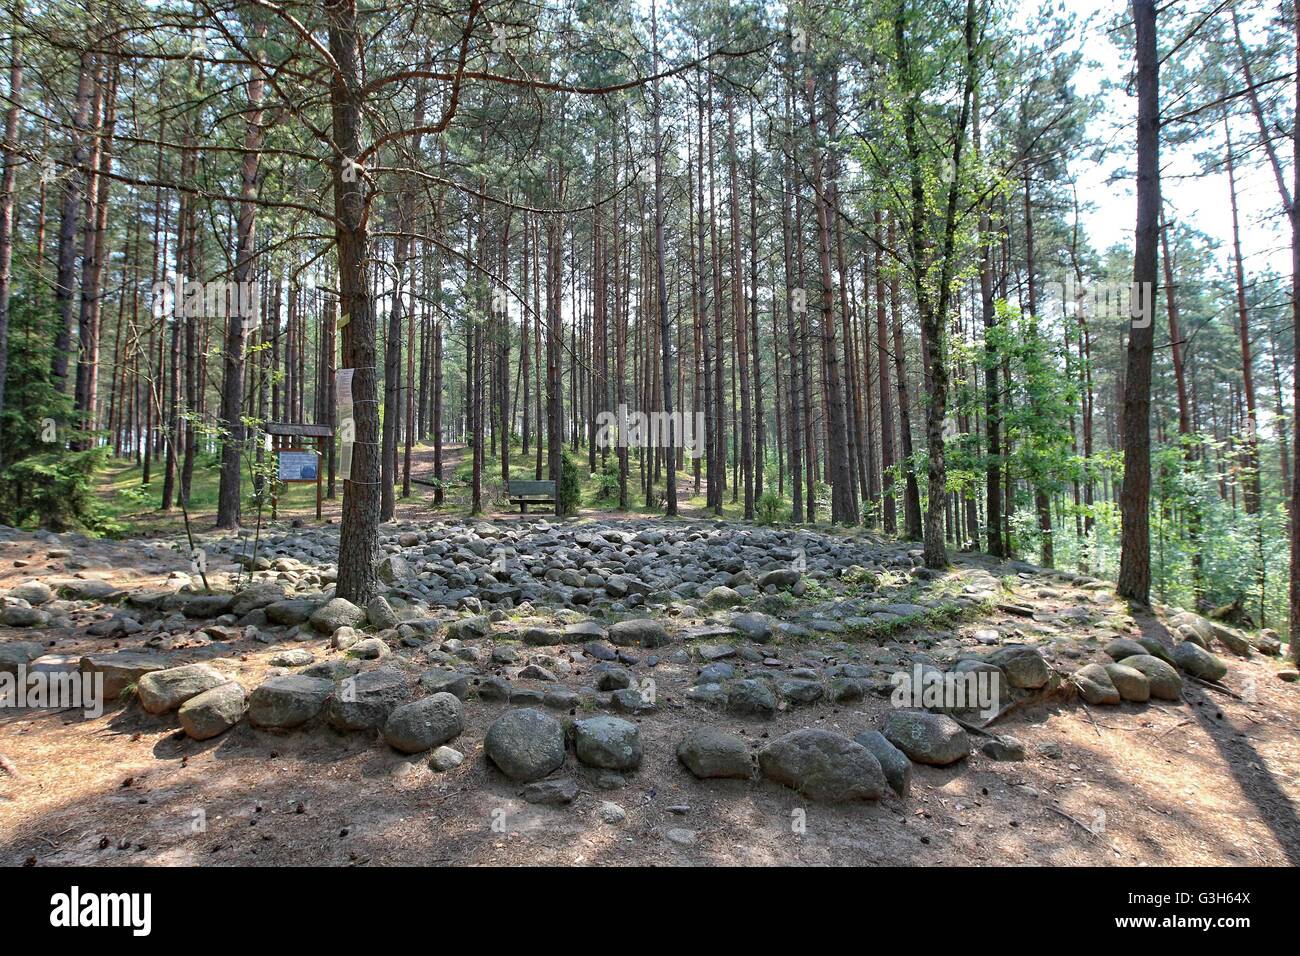 Wesiory, Pologne 25 avril, juin 2016 Très chaud et ensoleillé en Pologne. La température atteint 35 degrés Celsius. Les visites de personnes Wesiory cercles de pierres mégalithiques de cacher à l'ombre des arbres. Cercles de pierres mégalithiques Wesiory et lieux de sépulture sont cacher profondément dans la forêt. Ce lieu a été créé par les goths probablement dans la 1re à la 3e siècle. Il y a trois cercles de pierre et une partie de la quatrième et 20 des castrats. Le diamètre du plus grand cercle est de 26 mètres et est prévue avec des pierres d'une hauteur d'environ 1,5 m. Au milieu il y a peu de stèles de pierre Crédit : Michal Fludra/Alamy Live News Banque D'Images